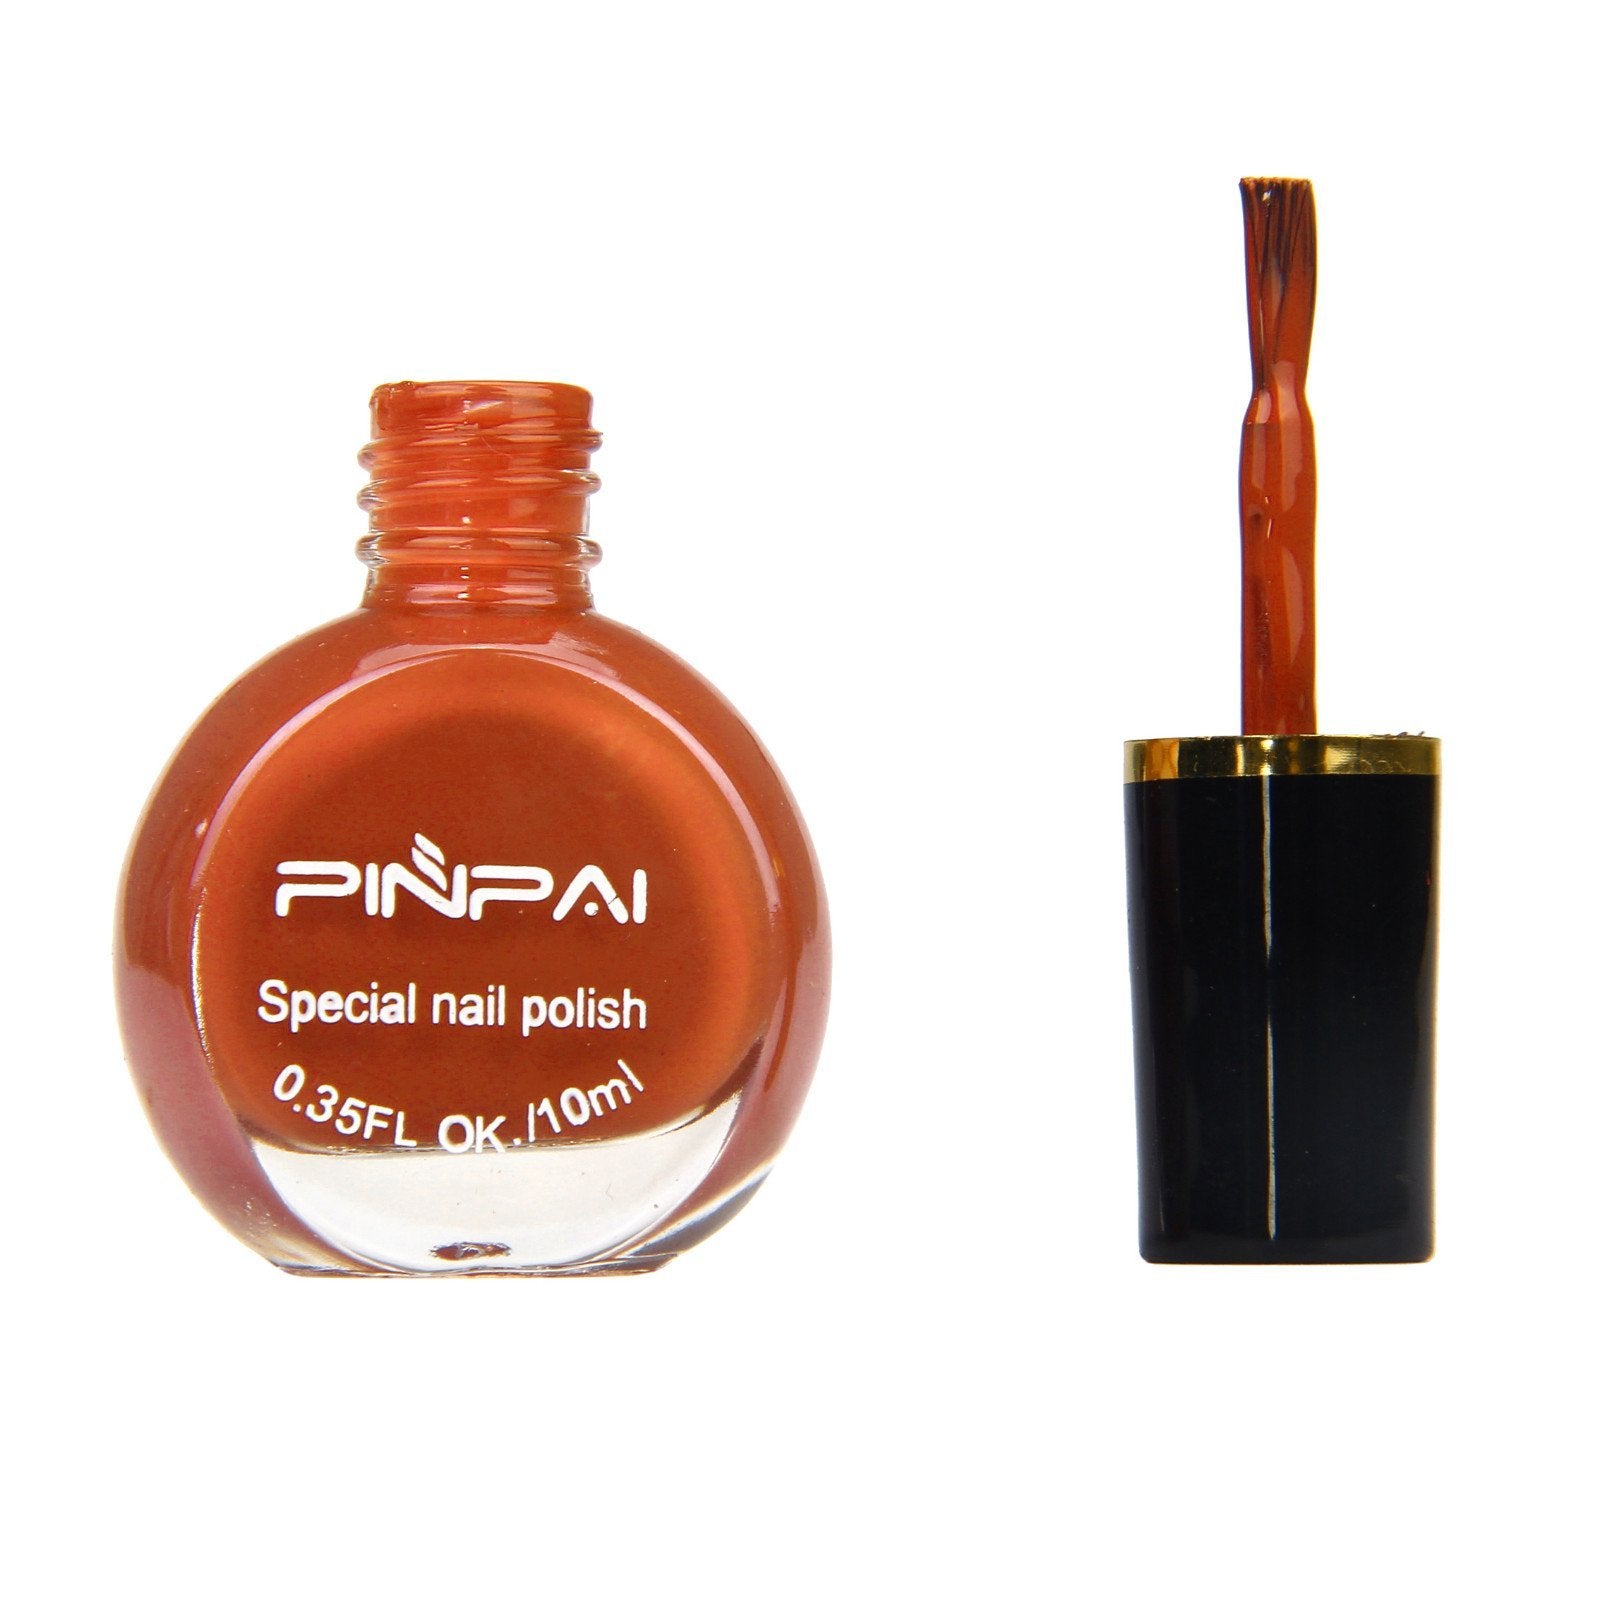 Pin Pai Permanent nail polish